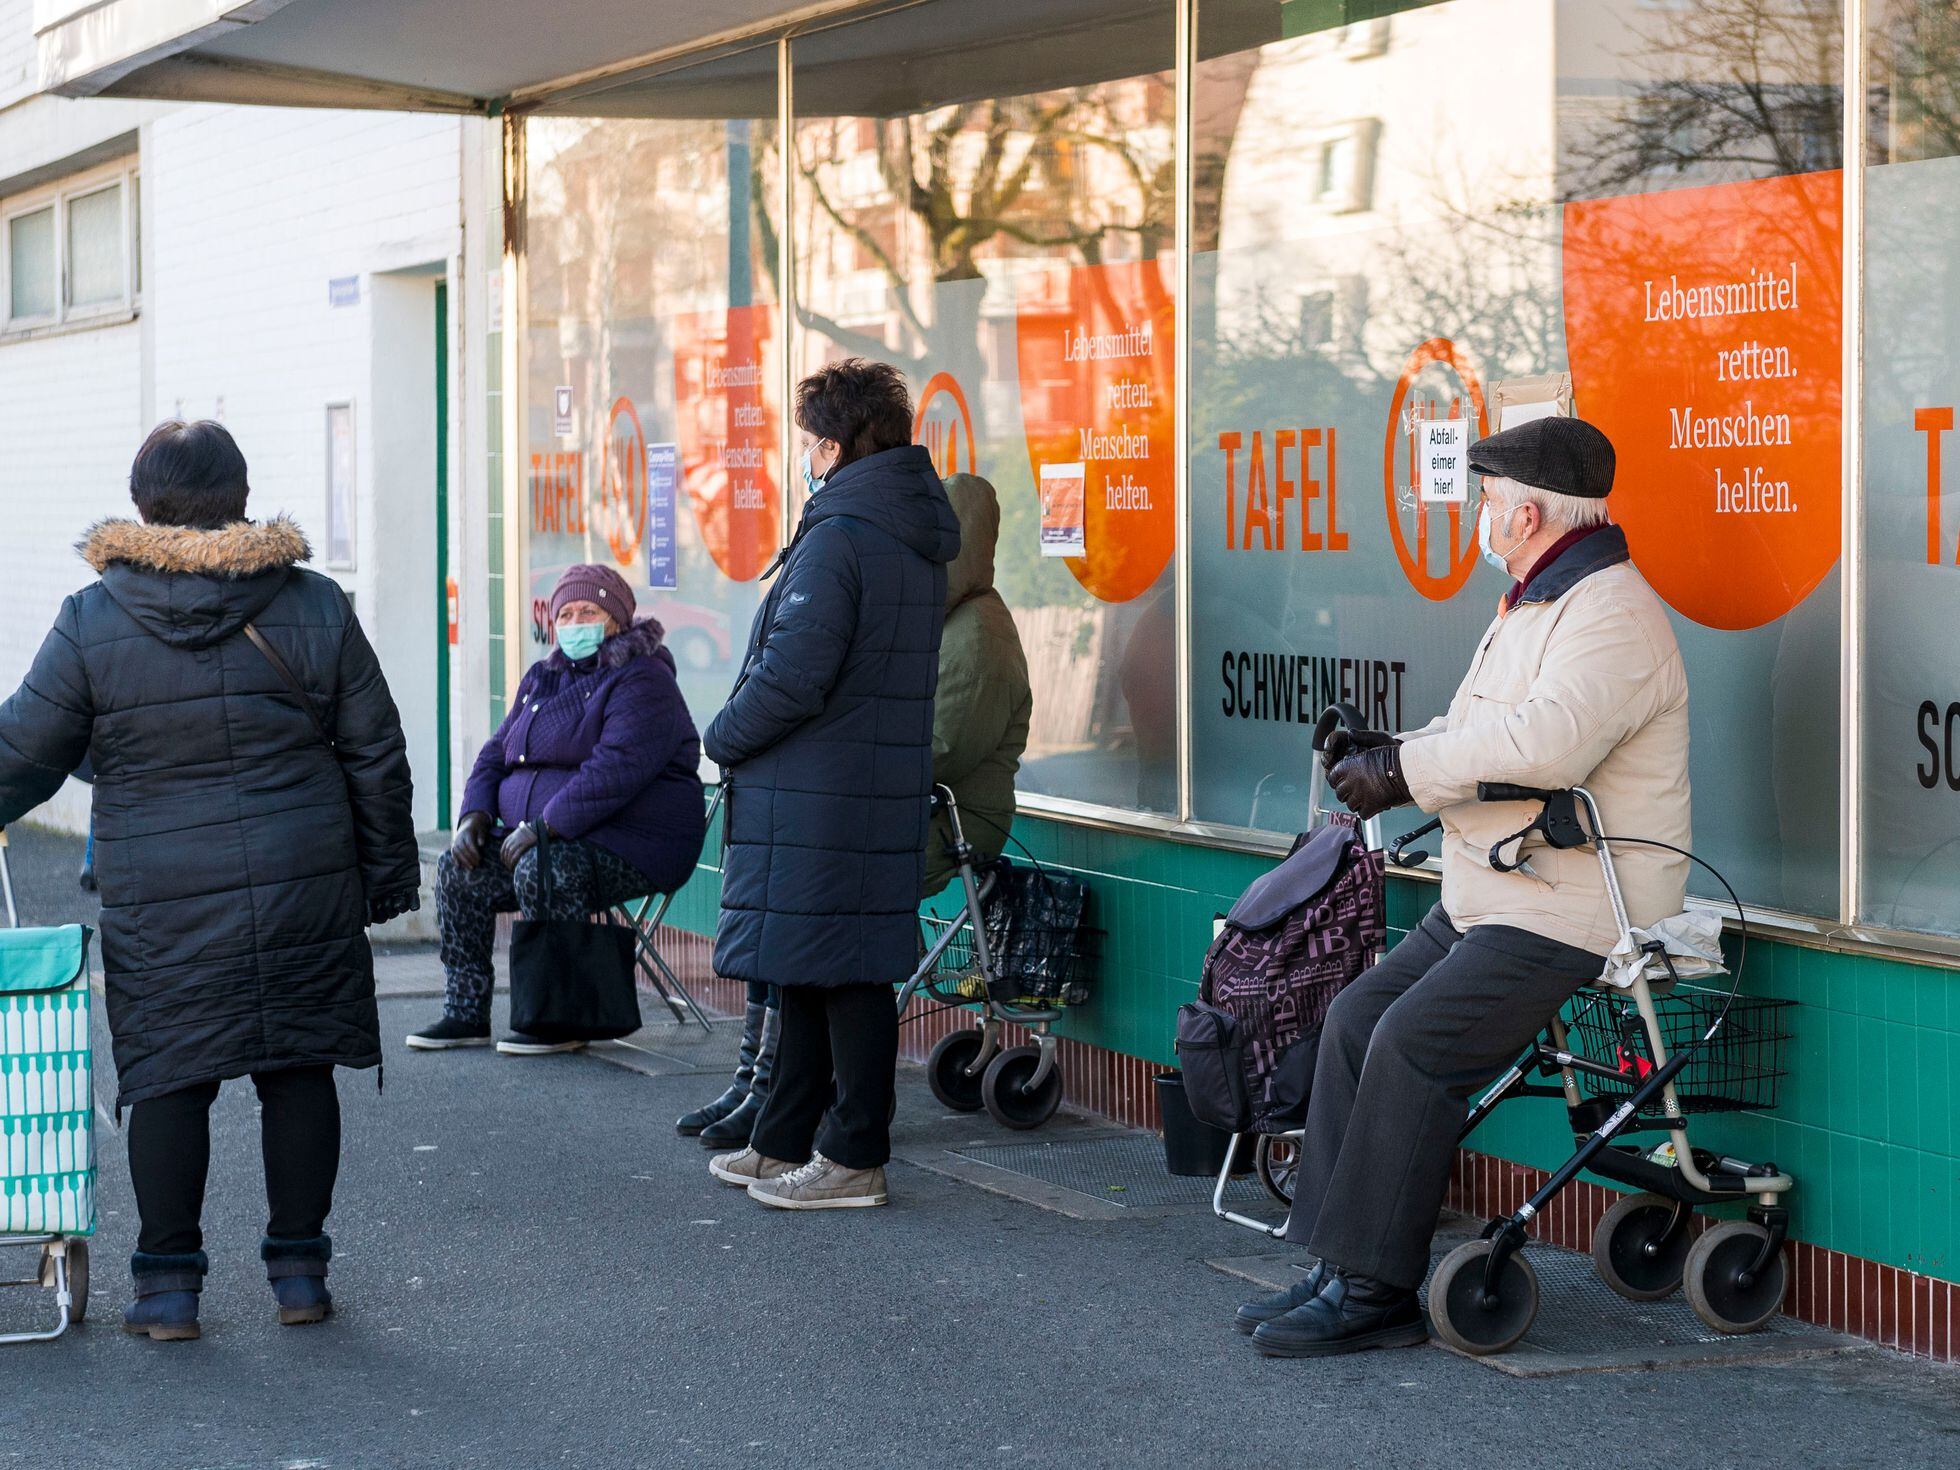 El mito del jubilado alemán se topa con pobreza | Internacional | EL PAÍS